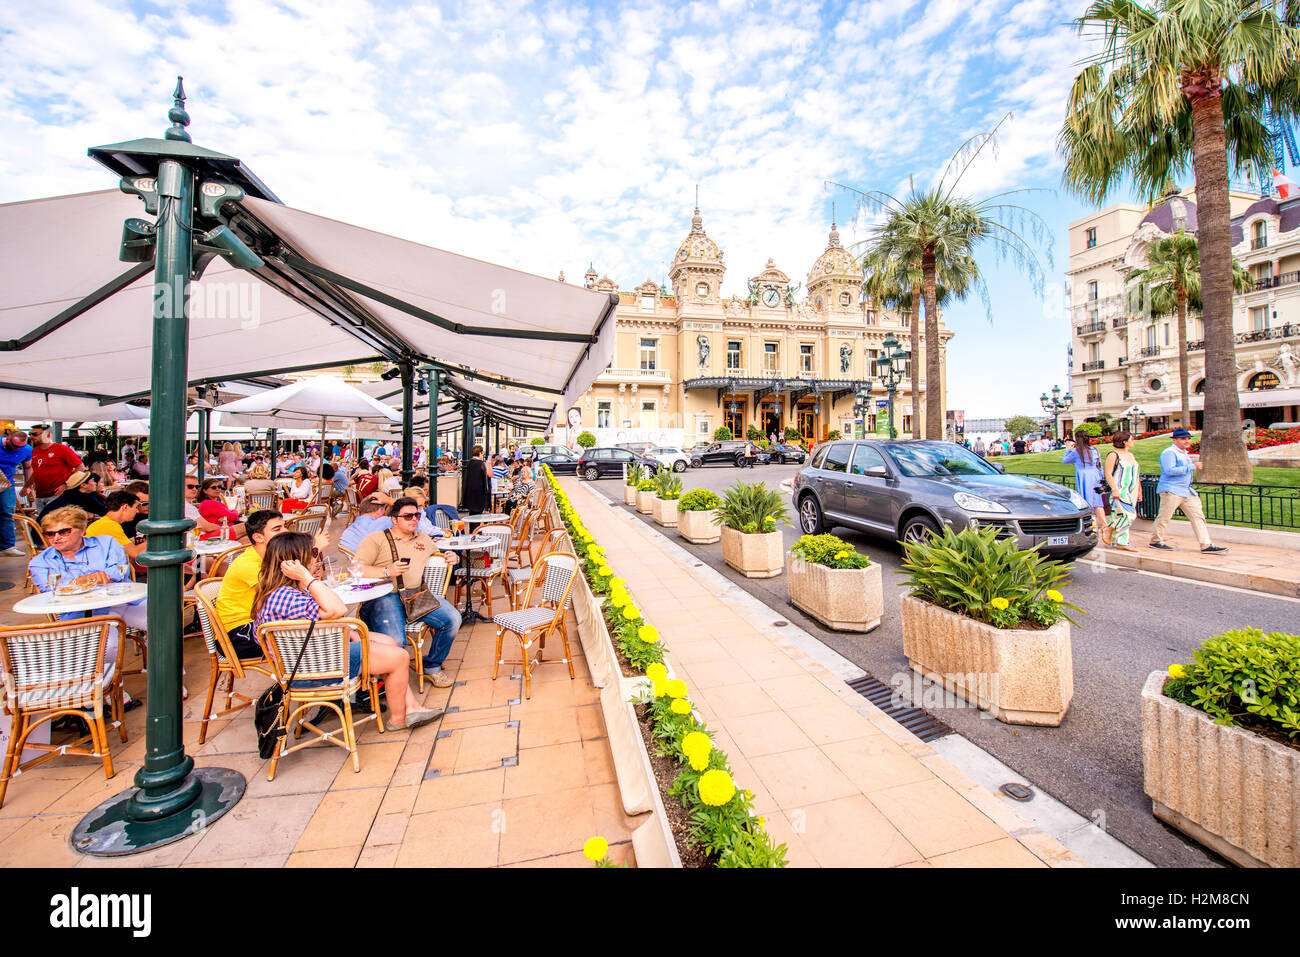 Cafe de Paris in Monaco Stock Photo